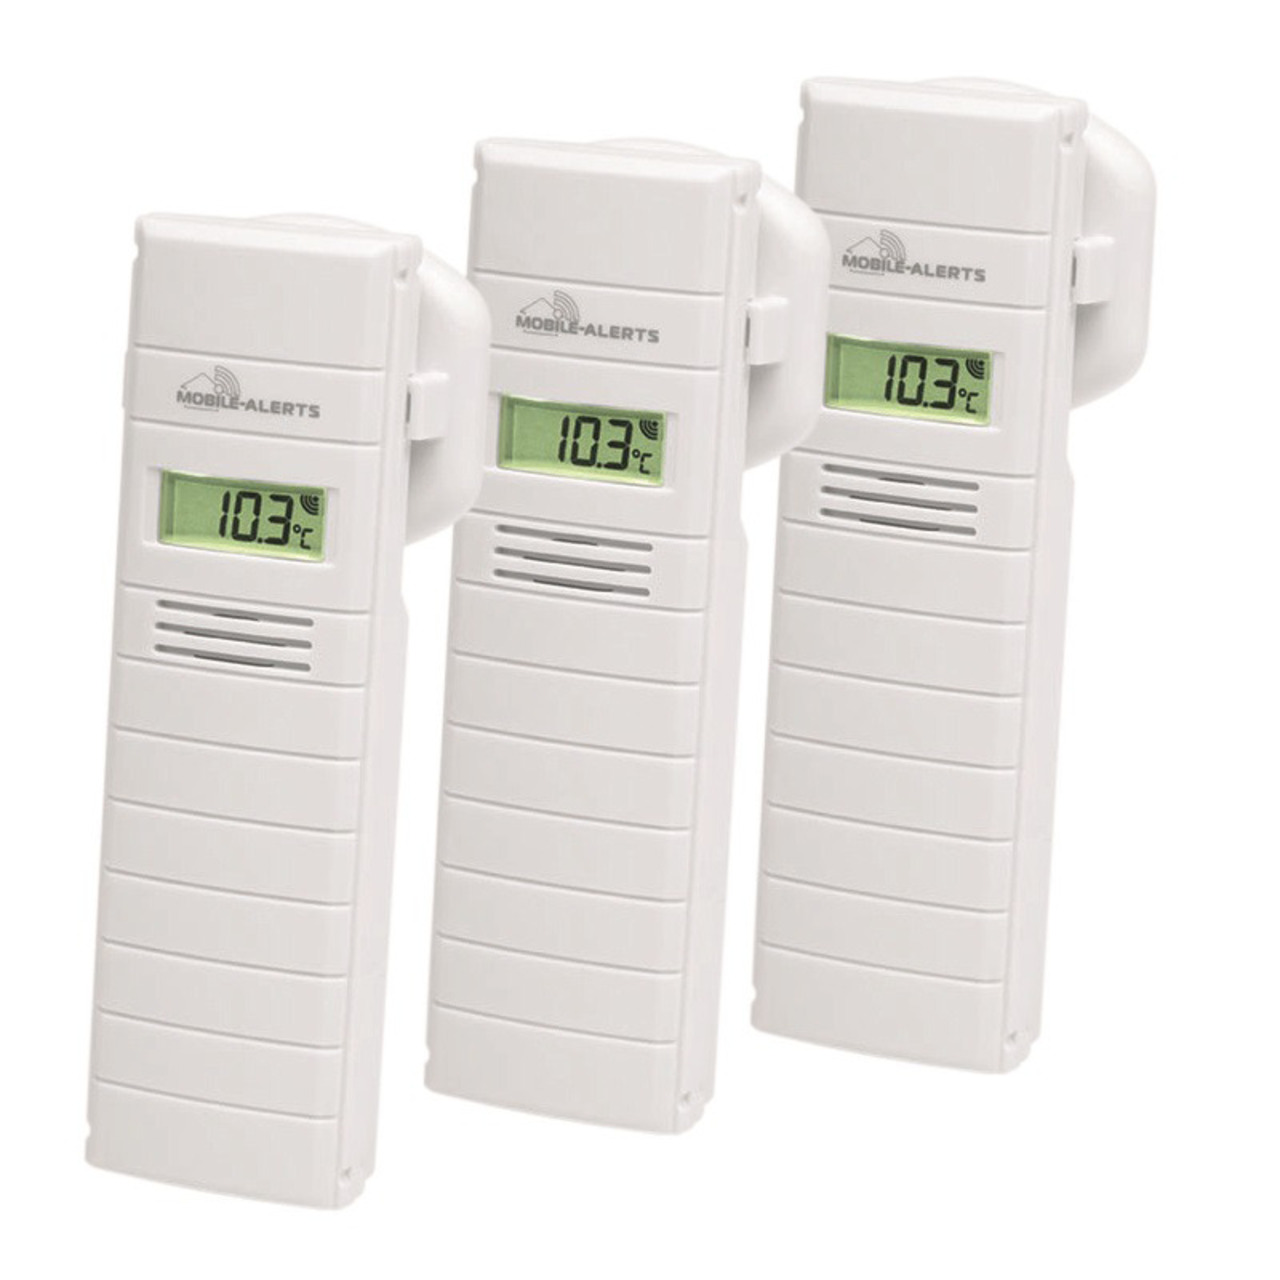 Mobile Alerts 3er Set Temperatur-Luftfeuchtigkeitssensor MA10200 mit LC-Display